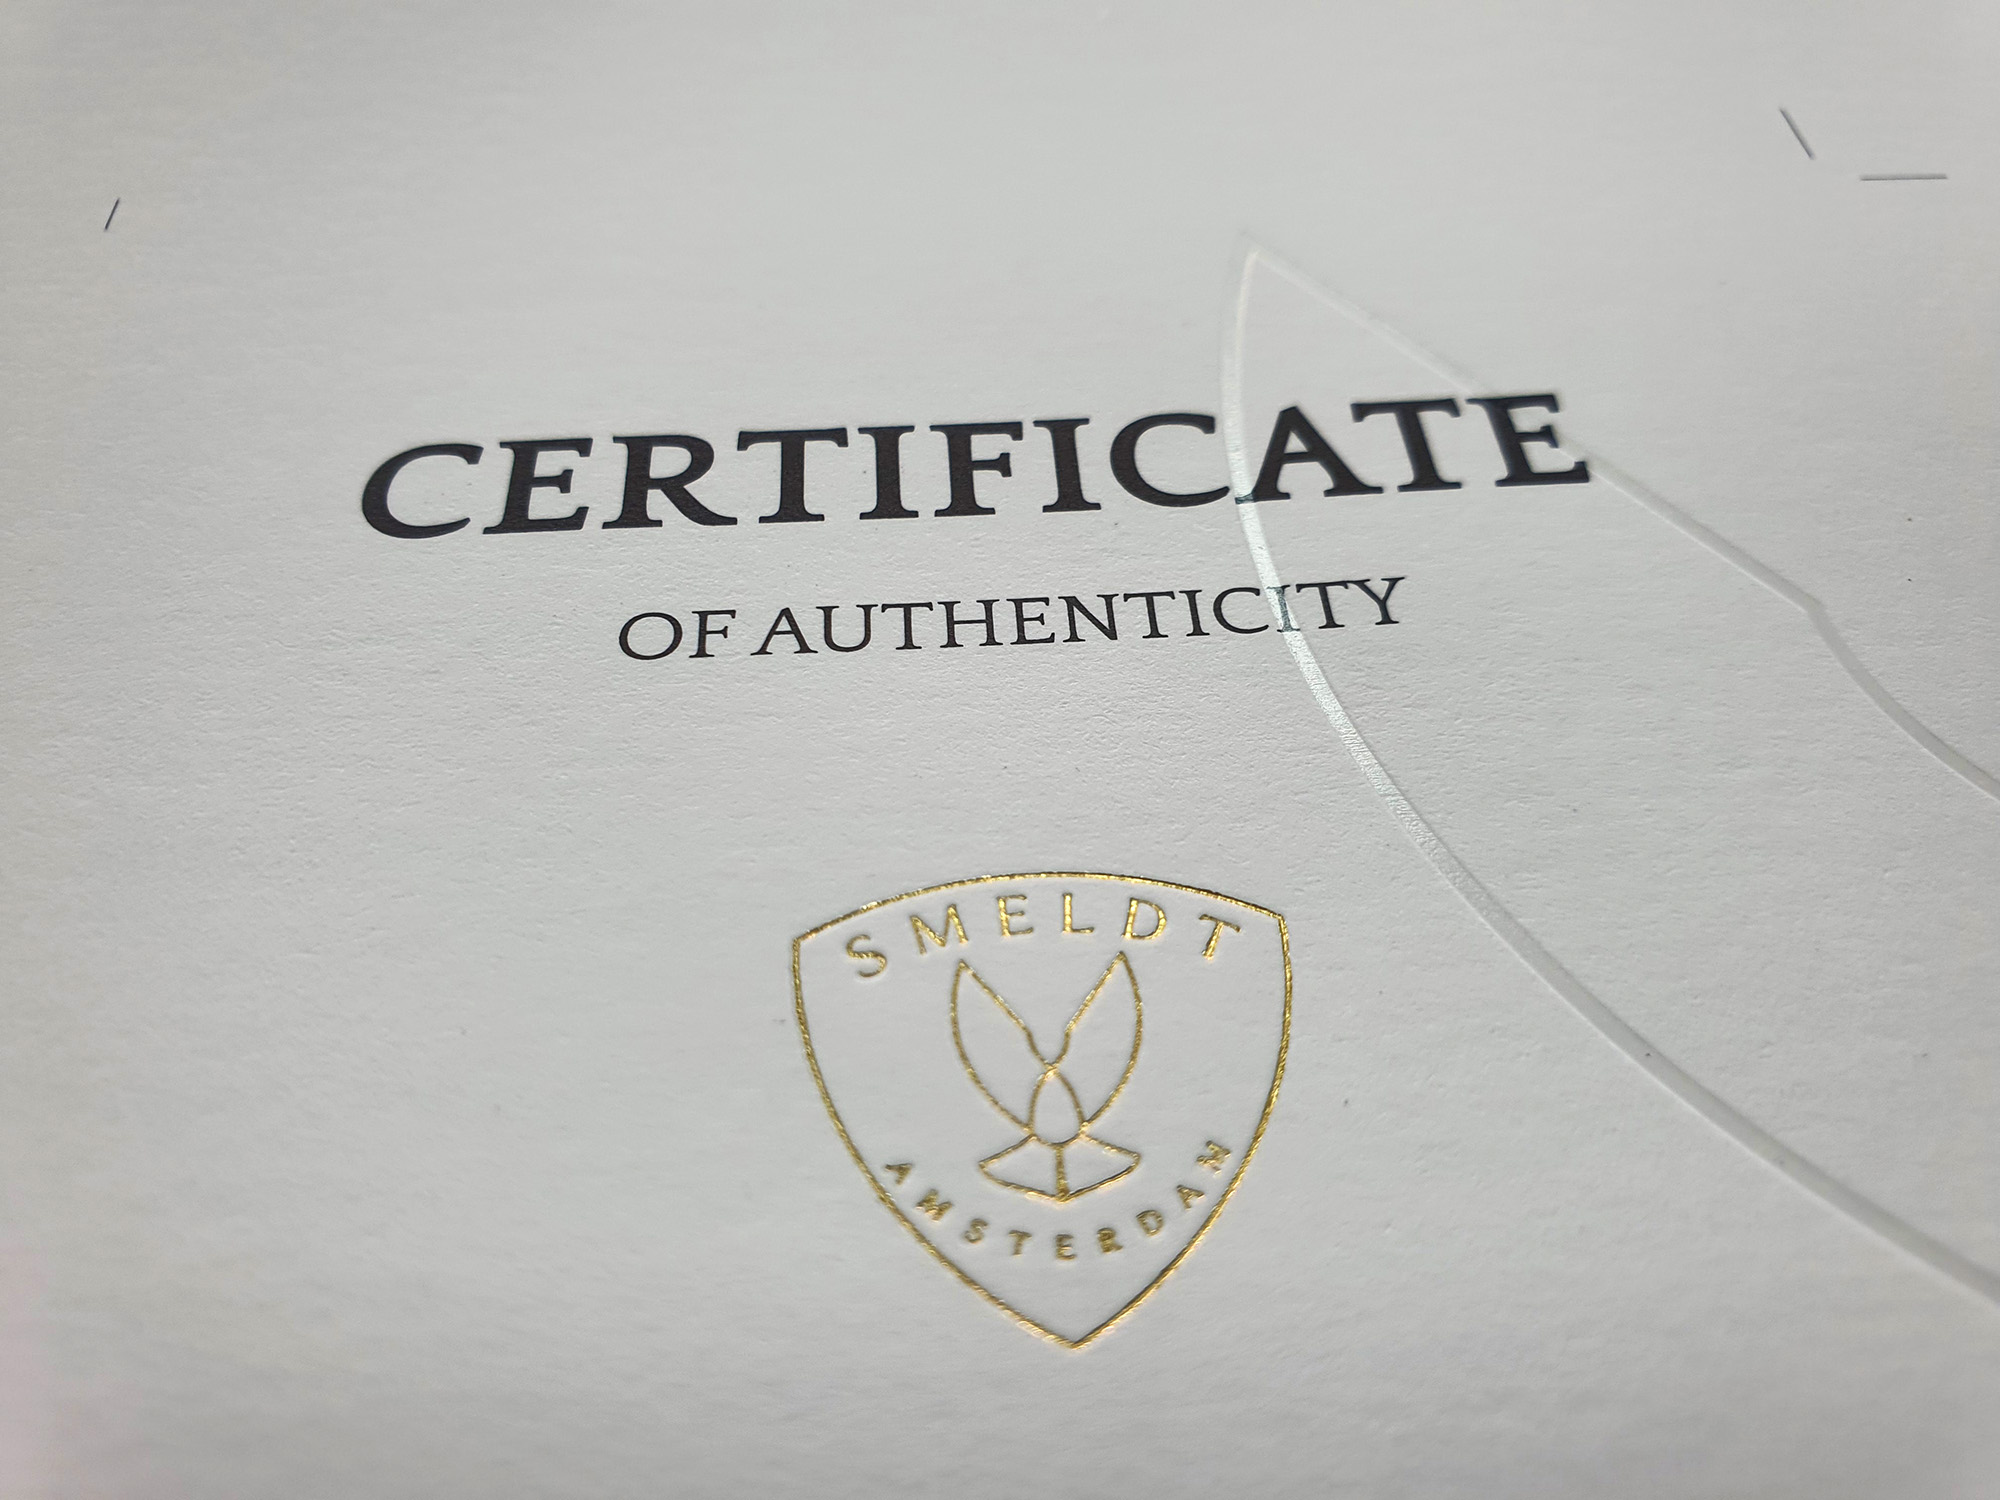 Certificaten met goud folie en transparante foliedruk